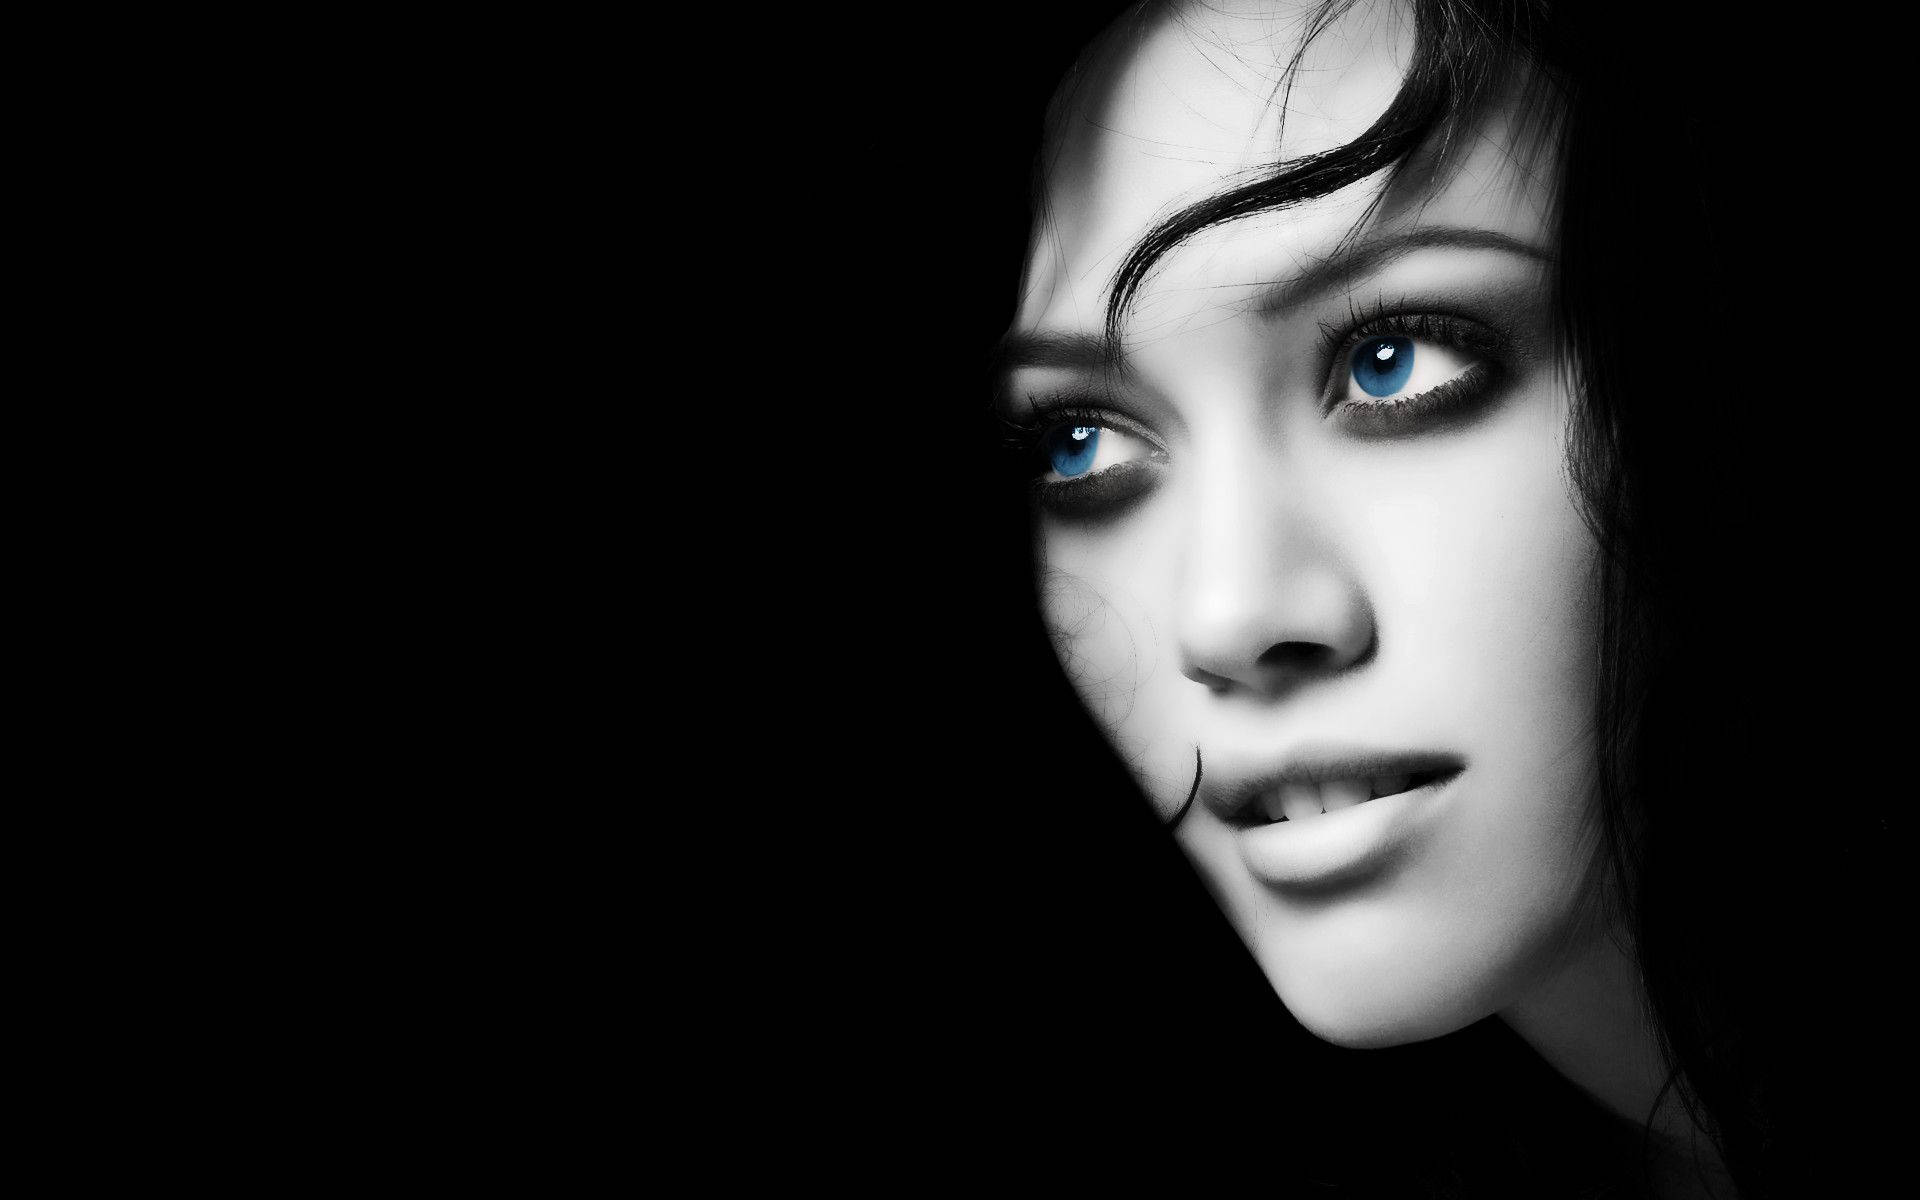 Dark Girl Looking With Blue Eyes